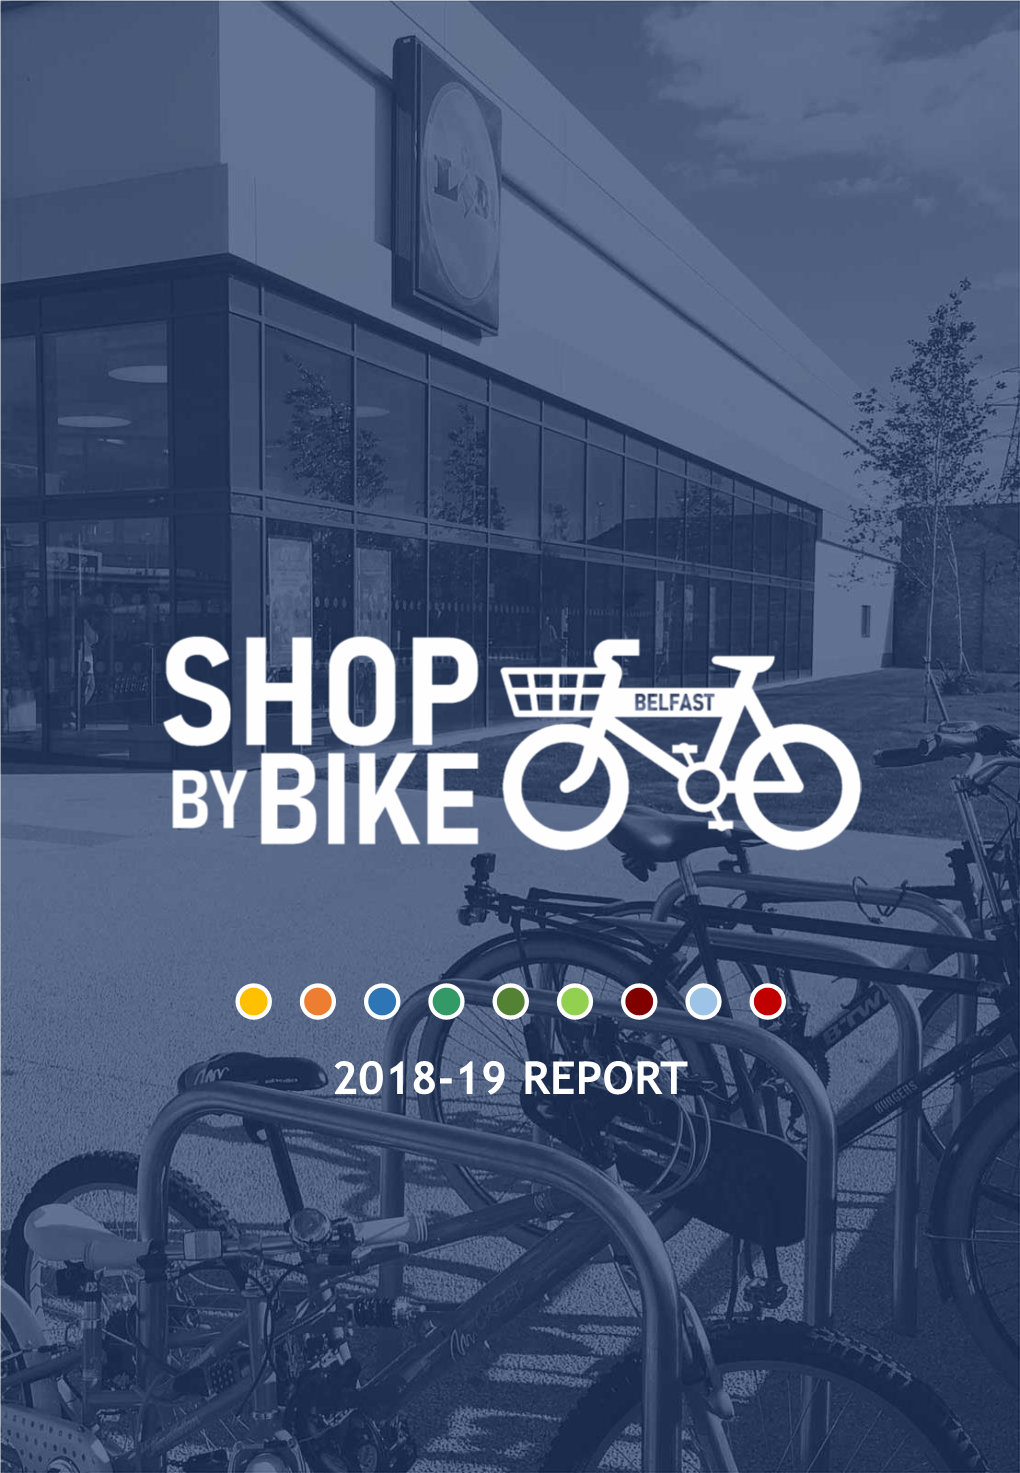 Shop by Bike Belfast 2018-19 Report